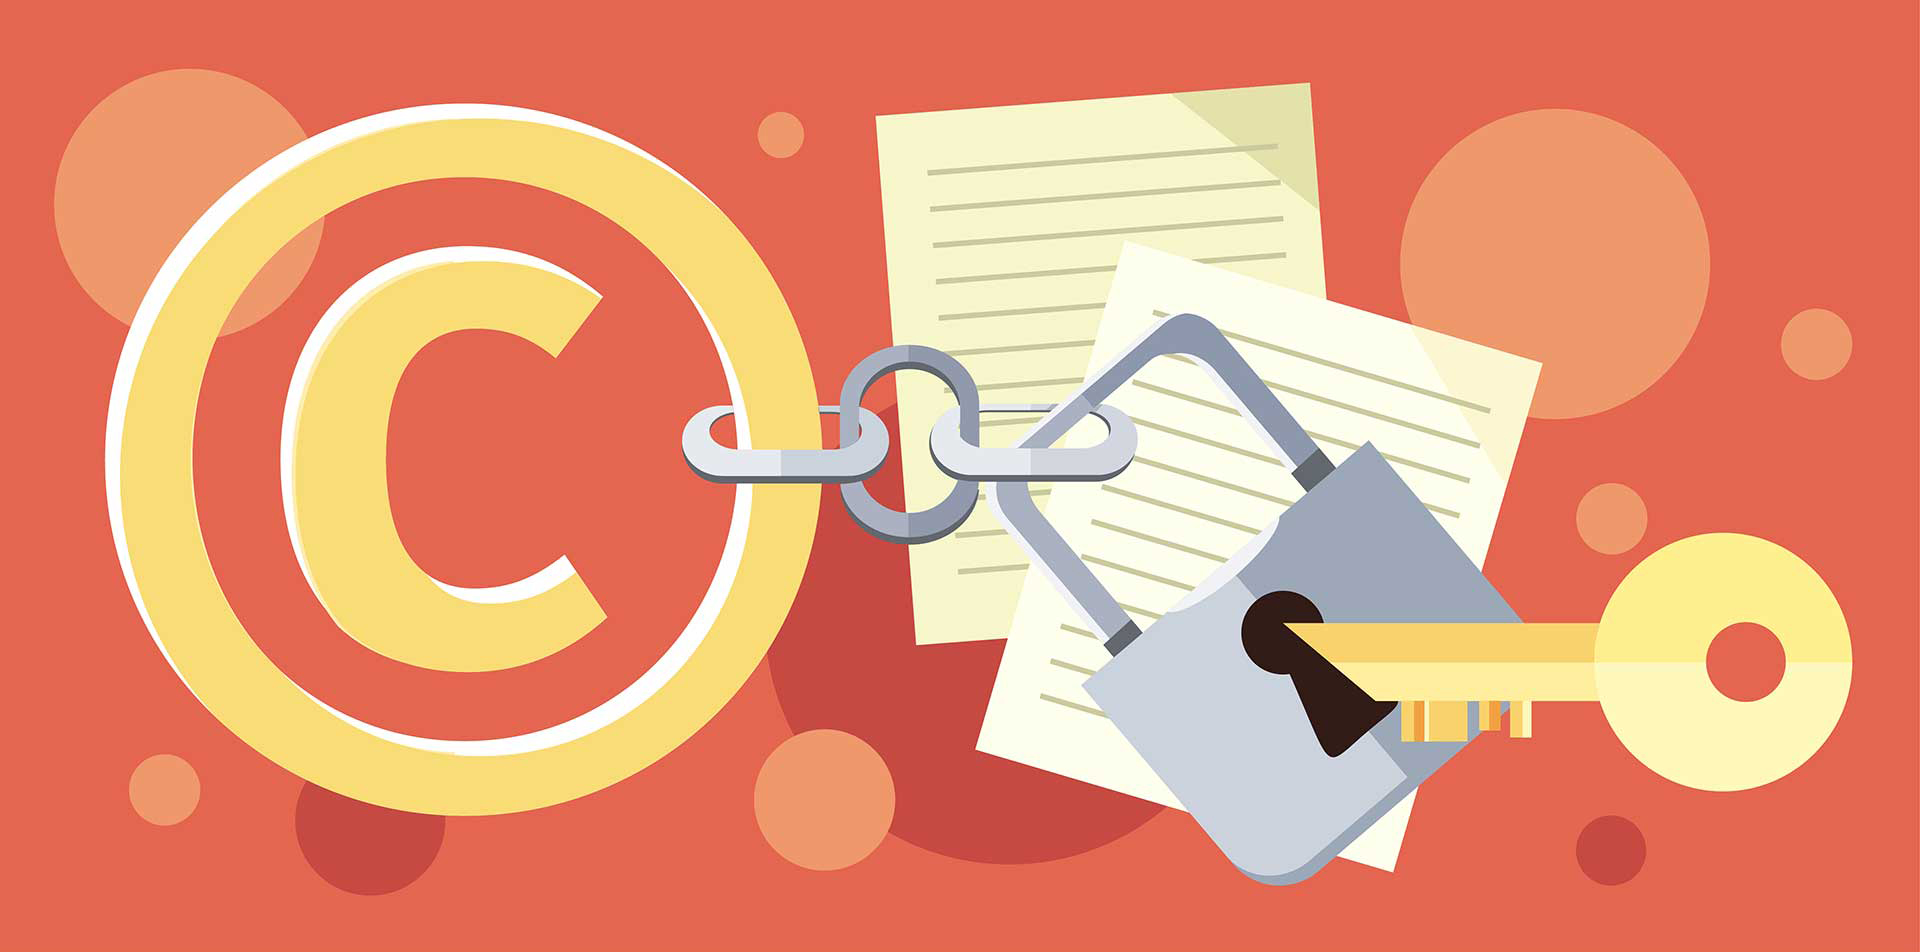 Et C-logo, der angiver 'copyright', lænket til en samling papirer med en hængelås og en nøgle, digital illustration.